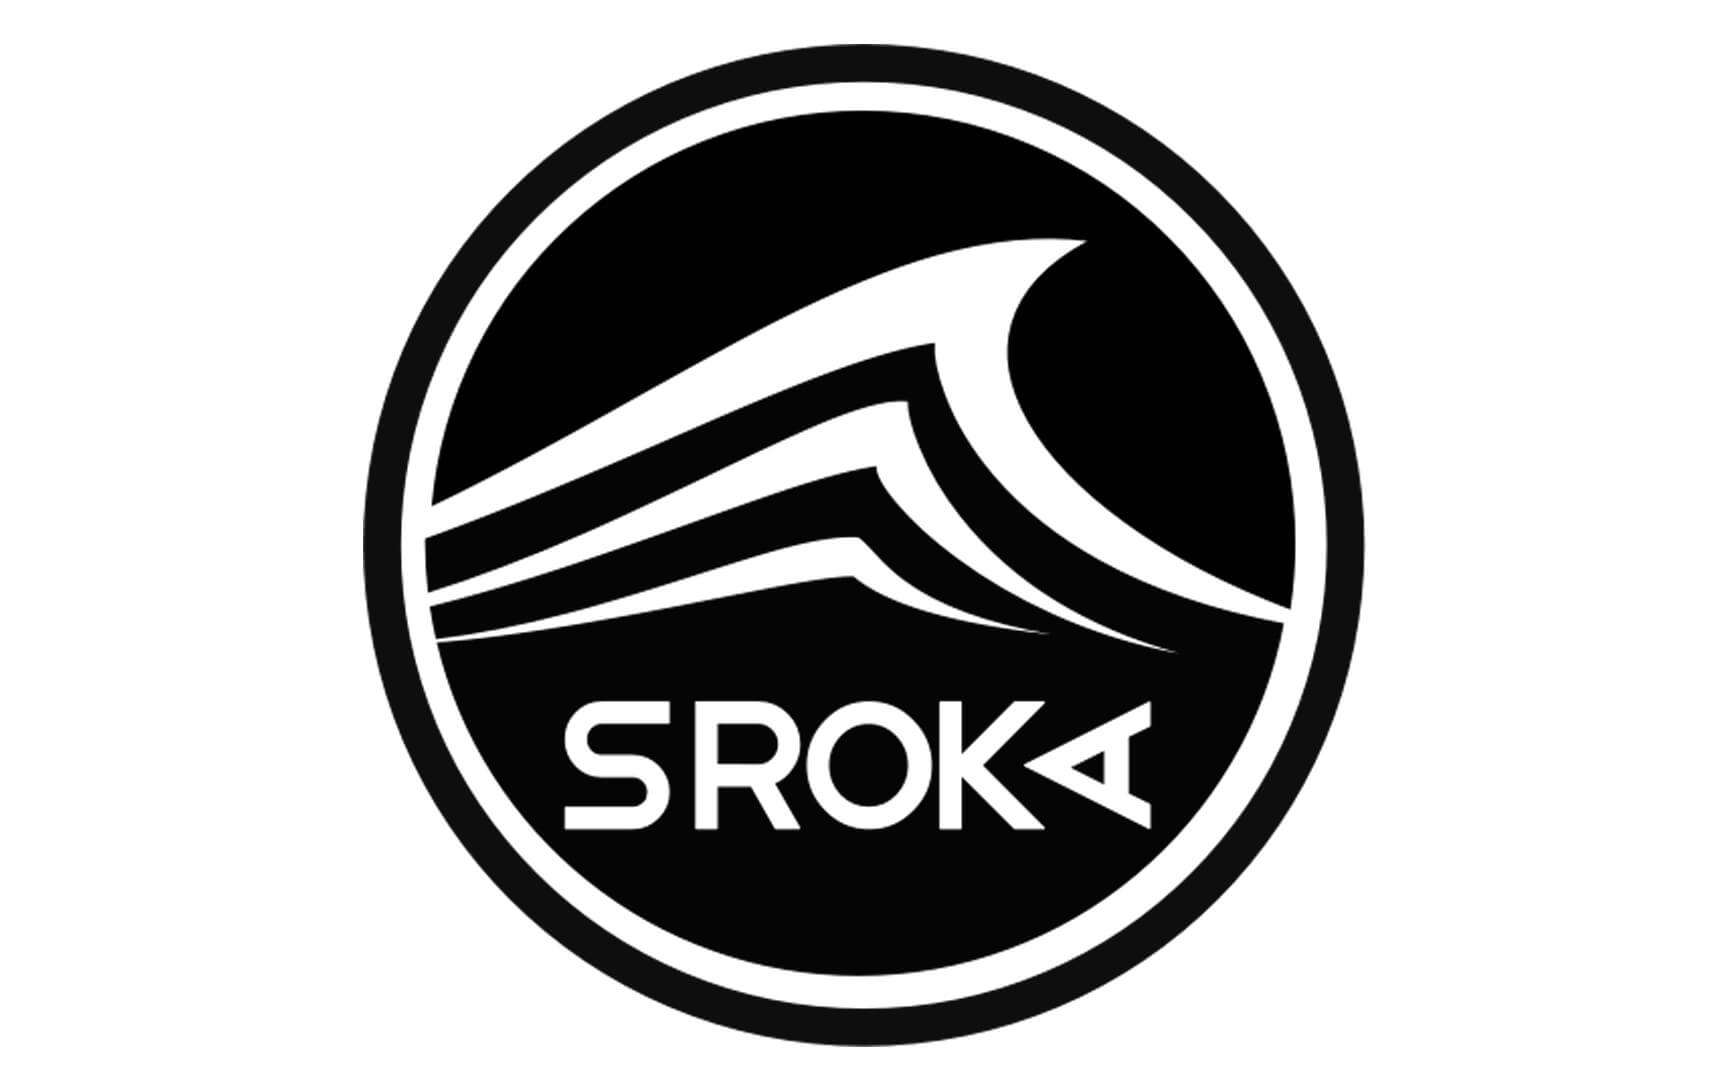 SROKA COMPANY